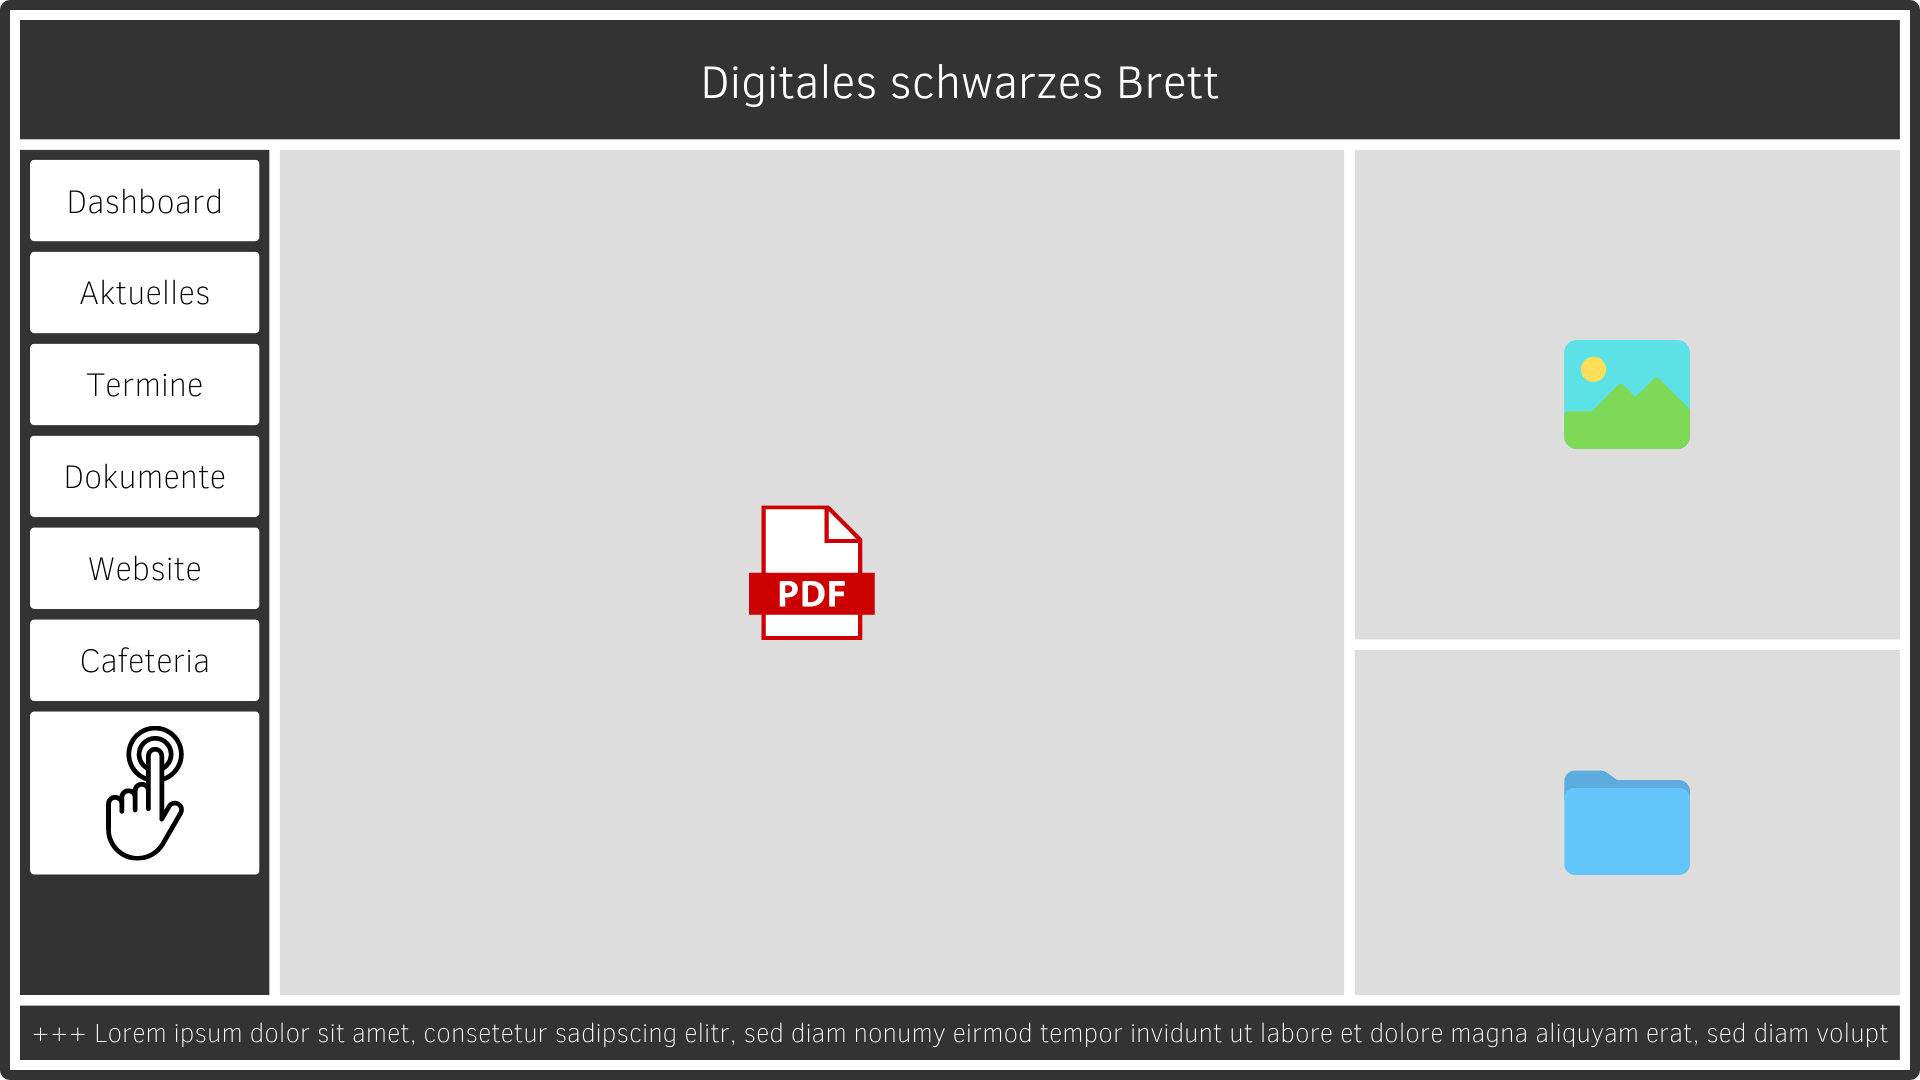 Digital Signage Software Features: Freie und pixelgenaue Bildschirmaufteilung für Medieninhalte aller Art. Touchscreen-Elemente für ein interaktives Digitales schwarzes Brett.